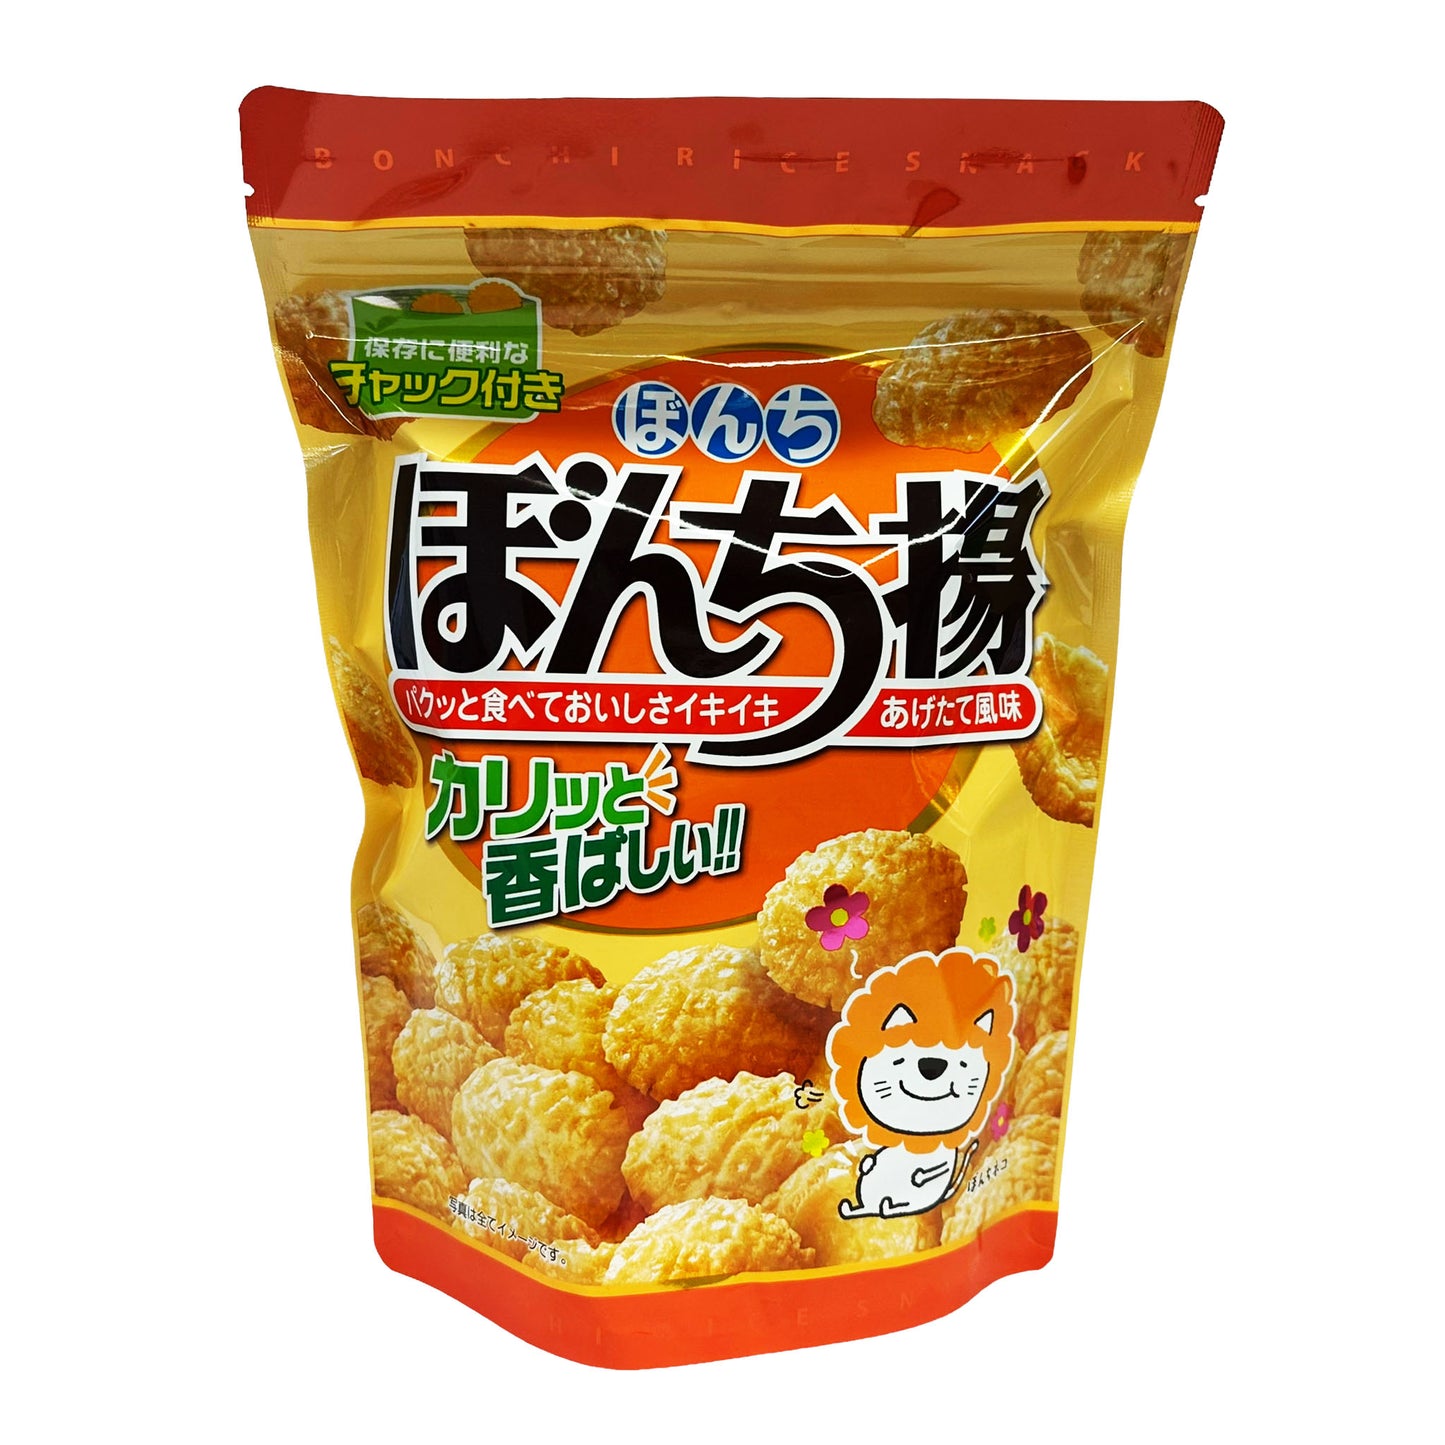 Front graphic image of Bonchi Age Fried Rice Cracker 3.7oz (105g)